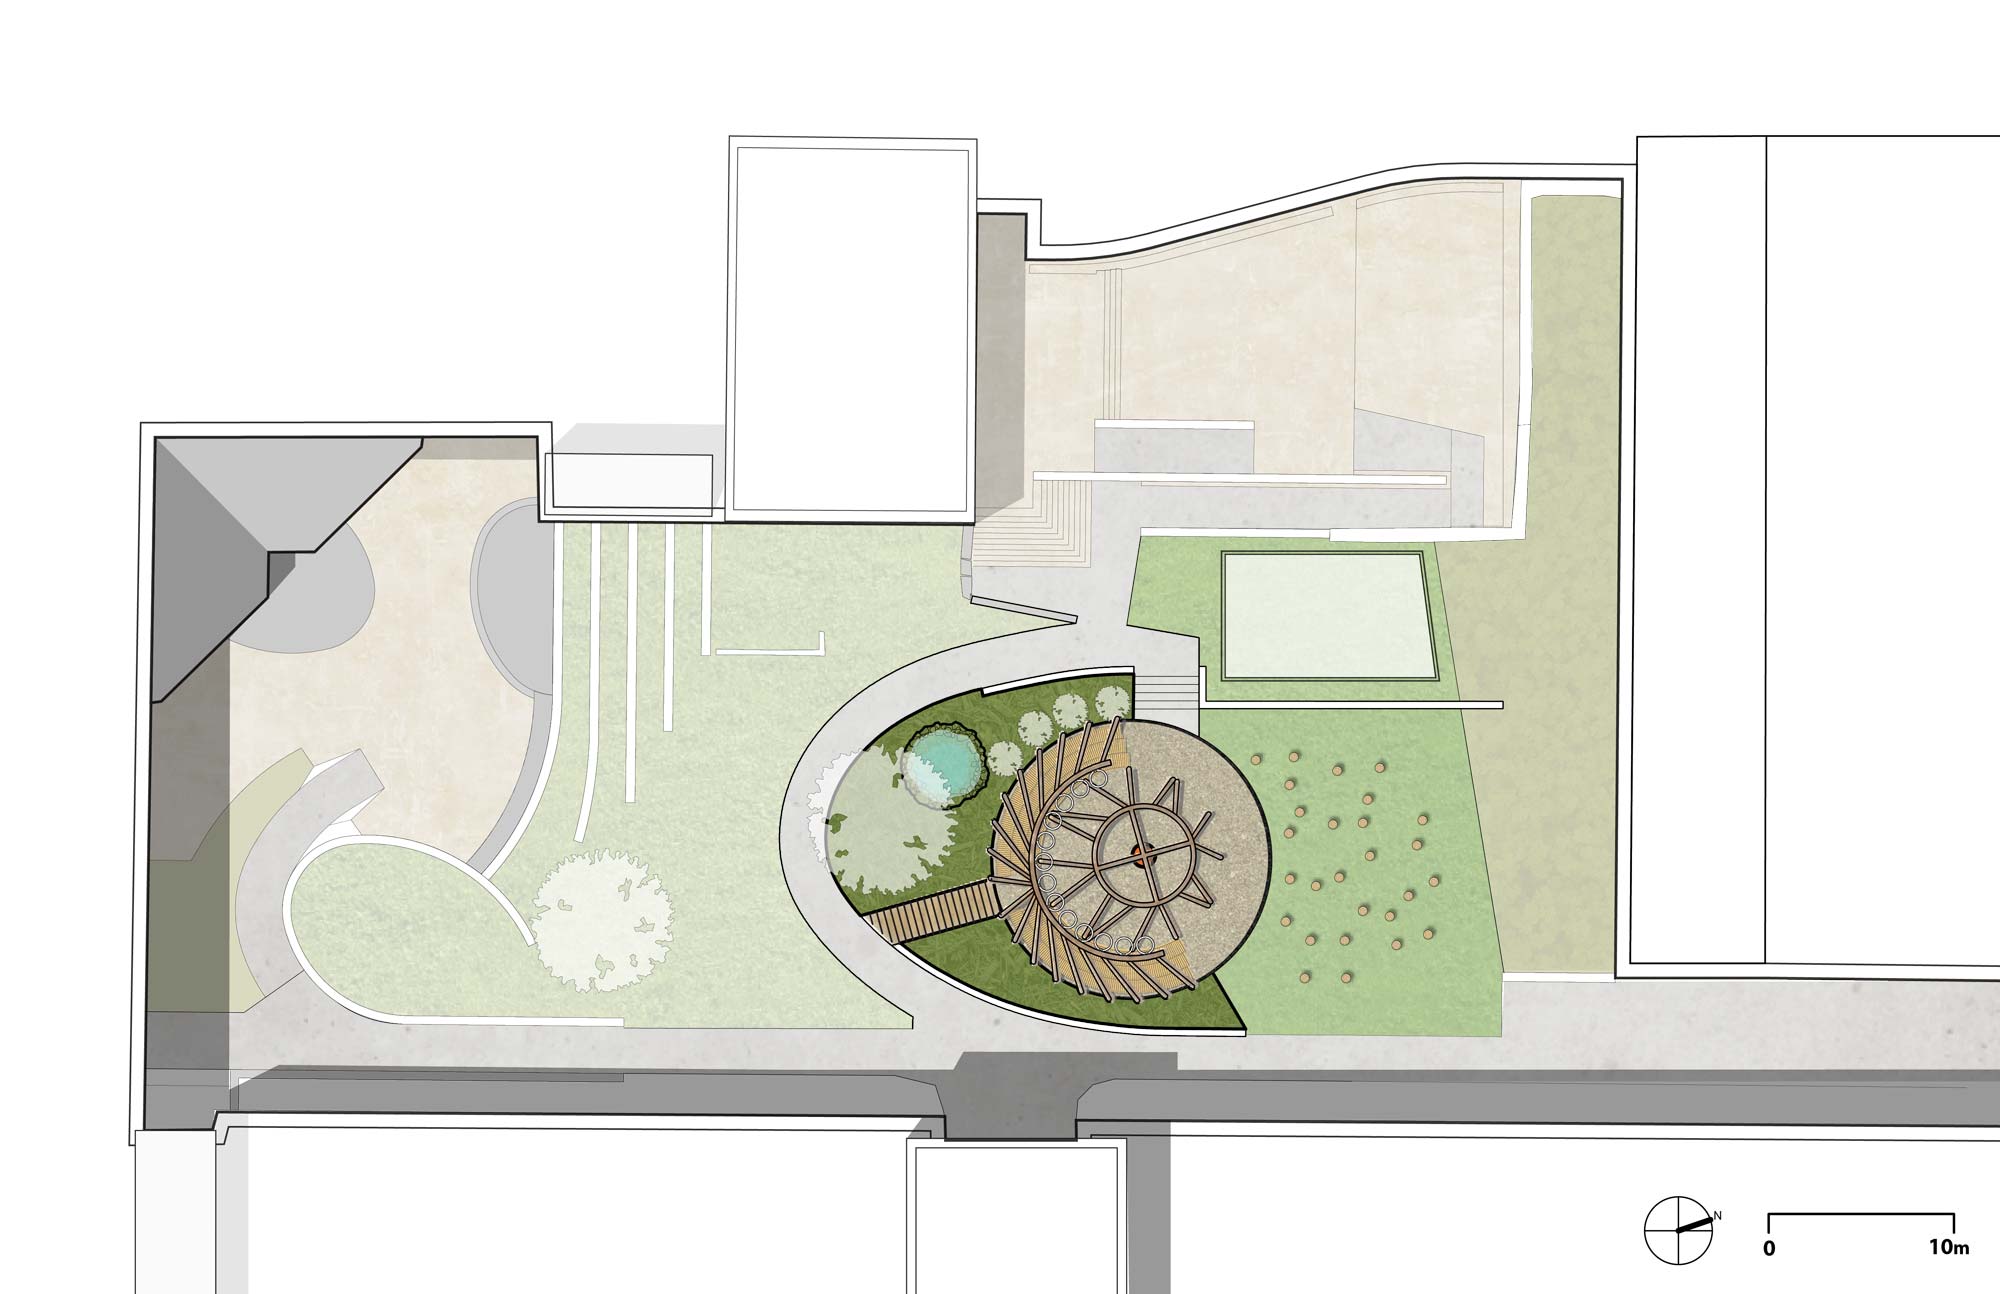 a plan of a garden with a table and umbrella.